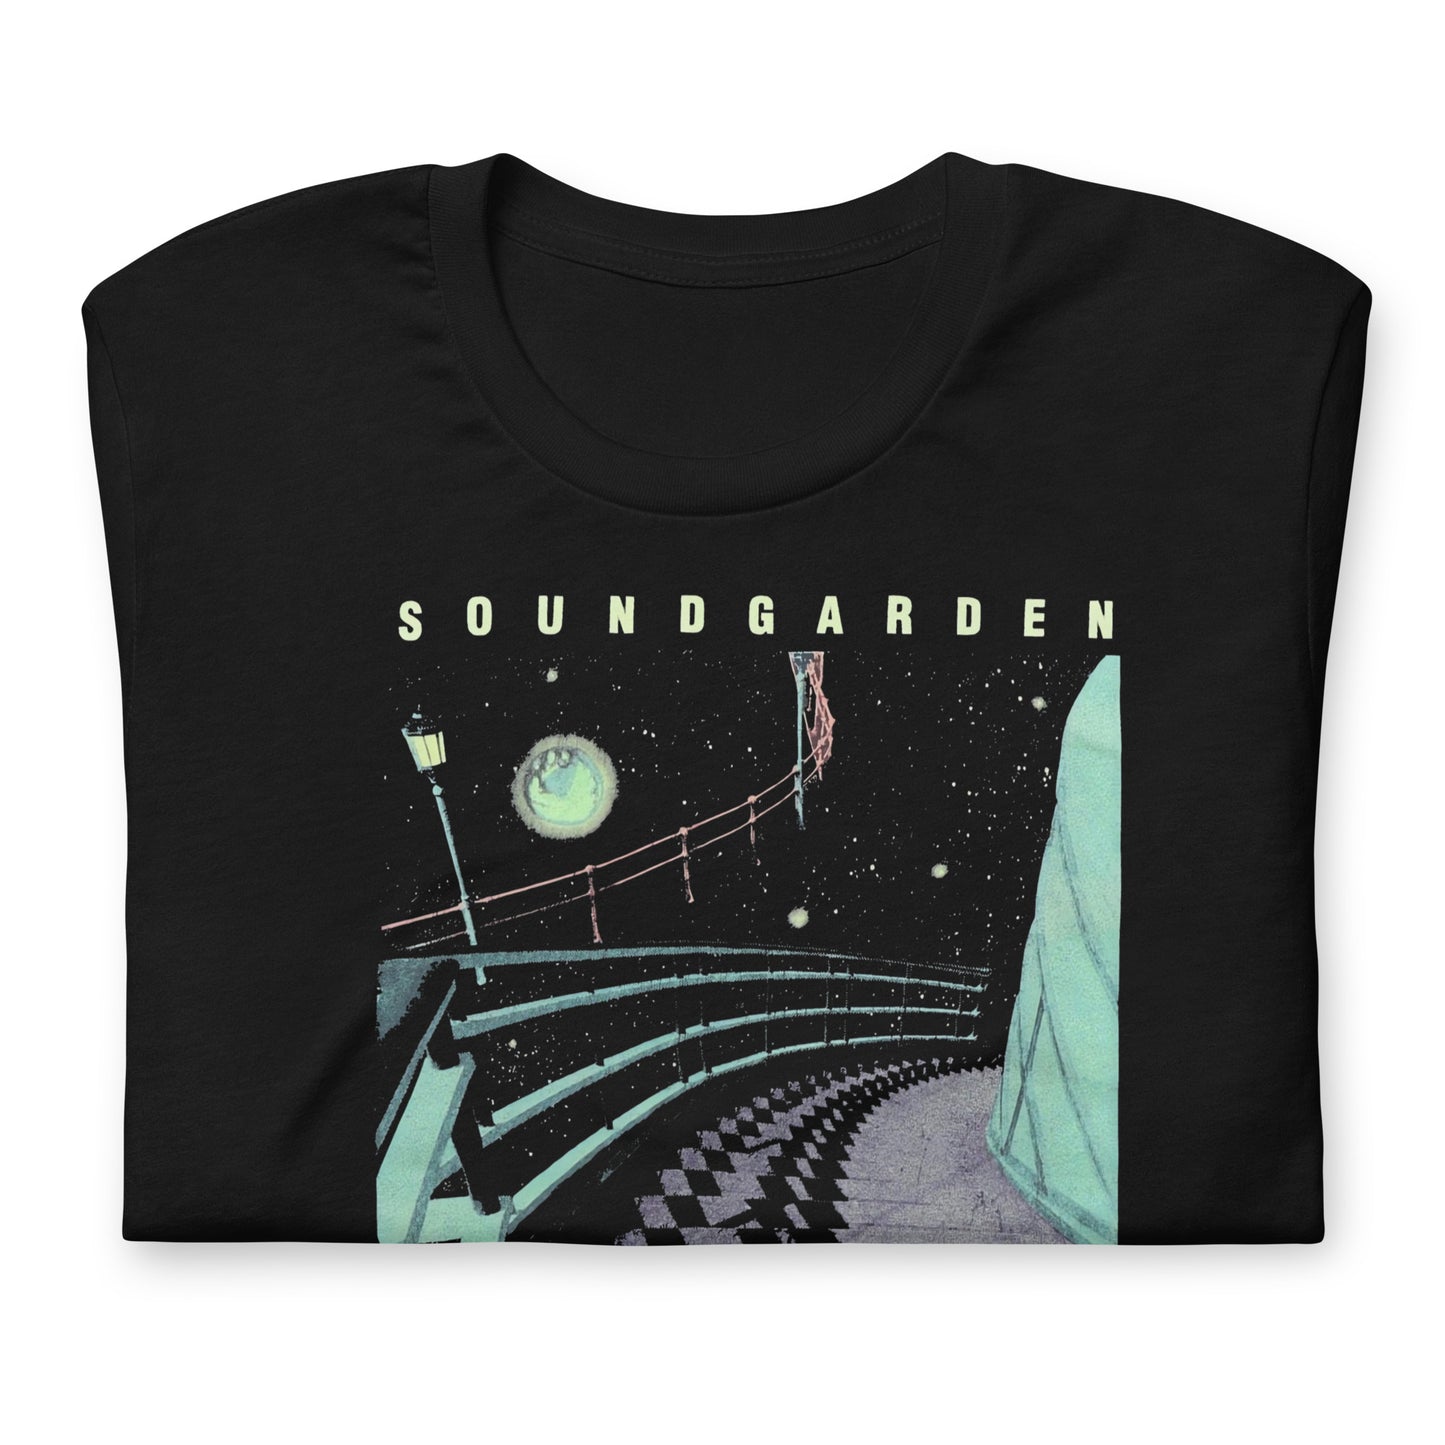 Camisa de Soundgarden, nuestras opciones de playeras son Unisex. disponible en Superstar. Compra y envíos internacionales.